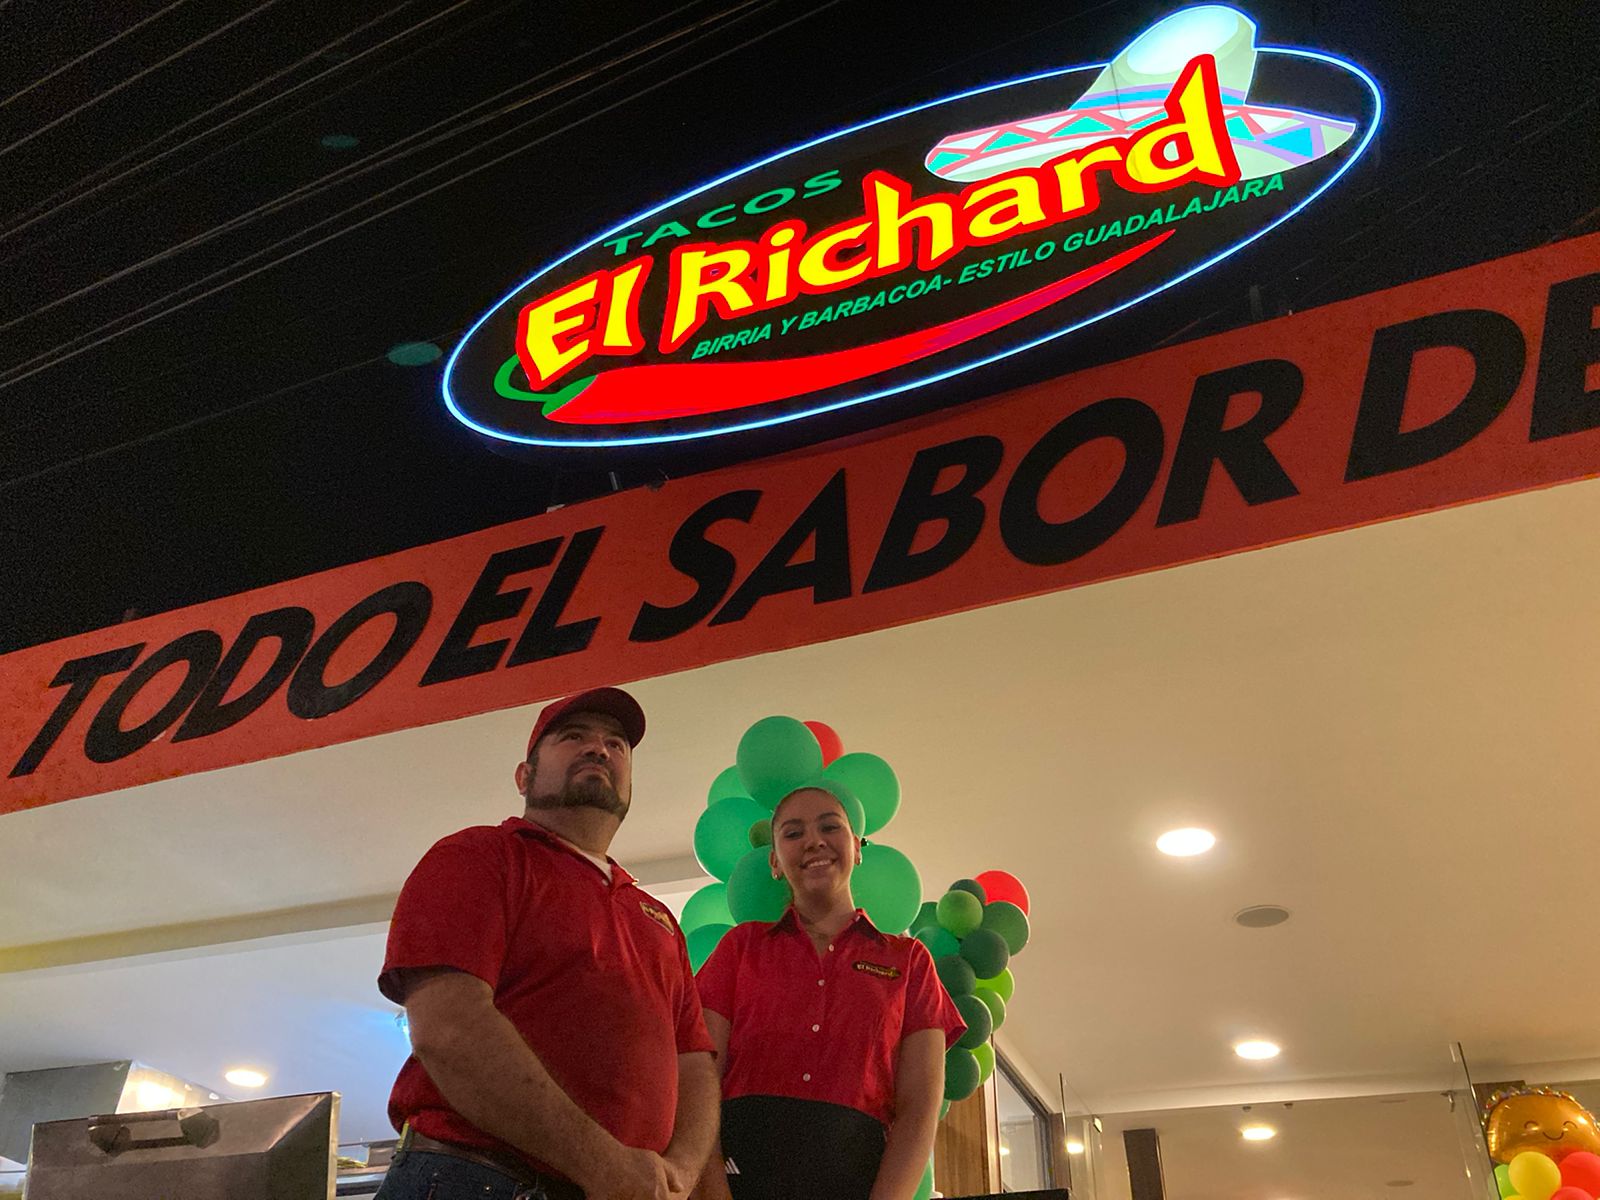 Tacos Richard se posiciona en Mazatlán y abre una tercera sucursal - Punto  MX